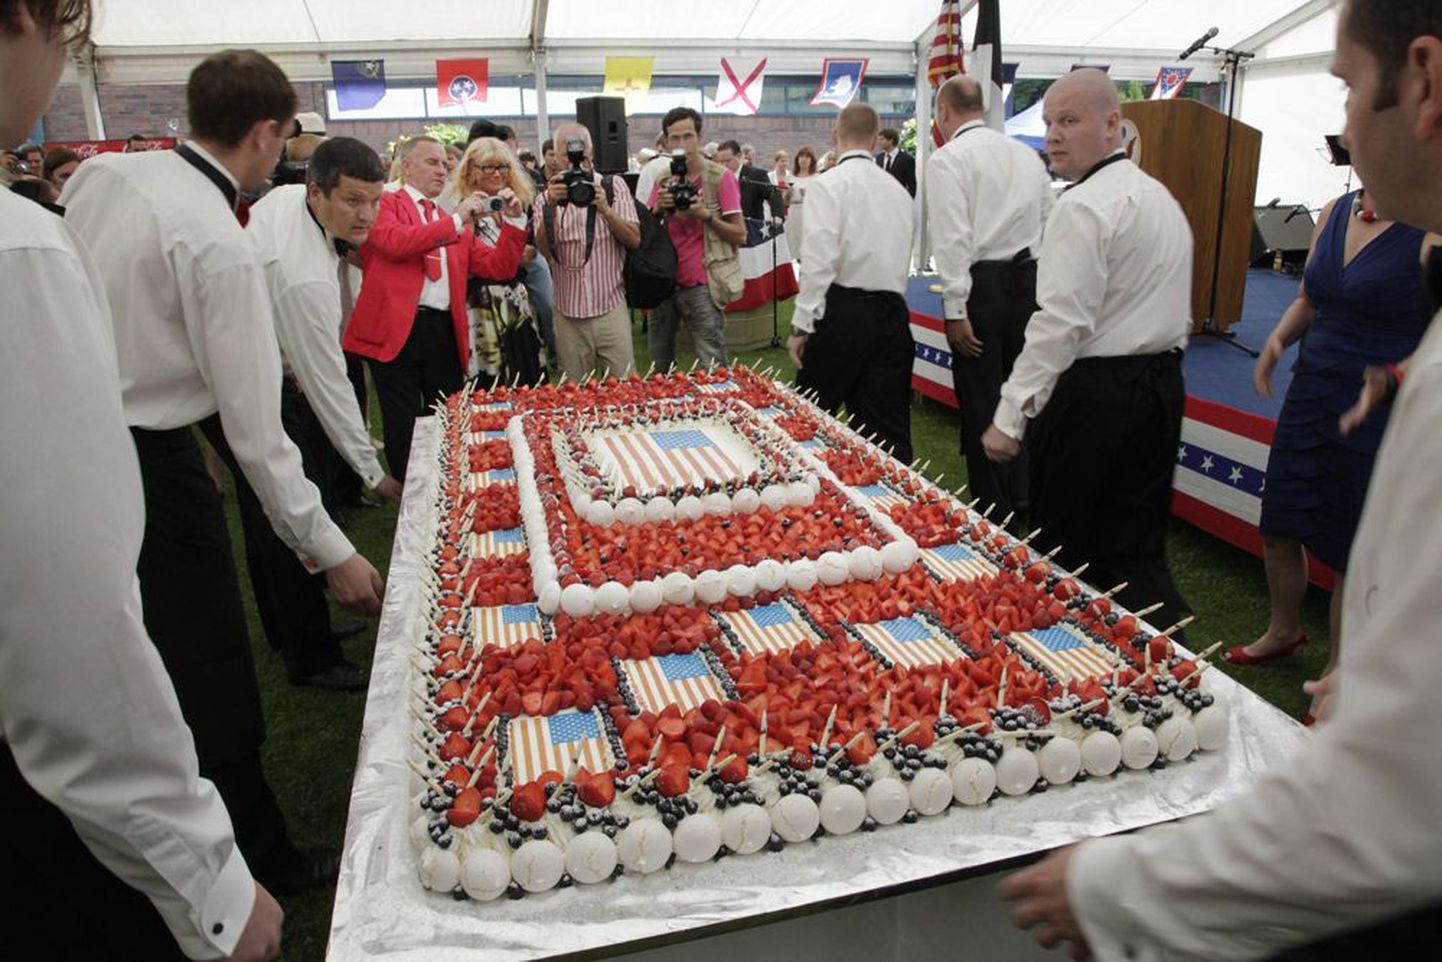 Праздничный торт — результат фантазии шеф-повара Radisson Blu Ирены Дмитриевой. На торт ушло 75 кг клубники, 
20 кг черники, 60 л сливок и 500 яиц.